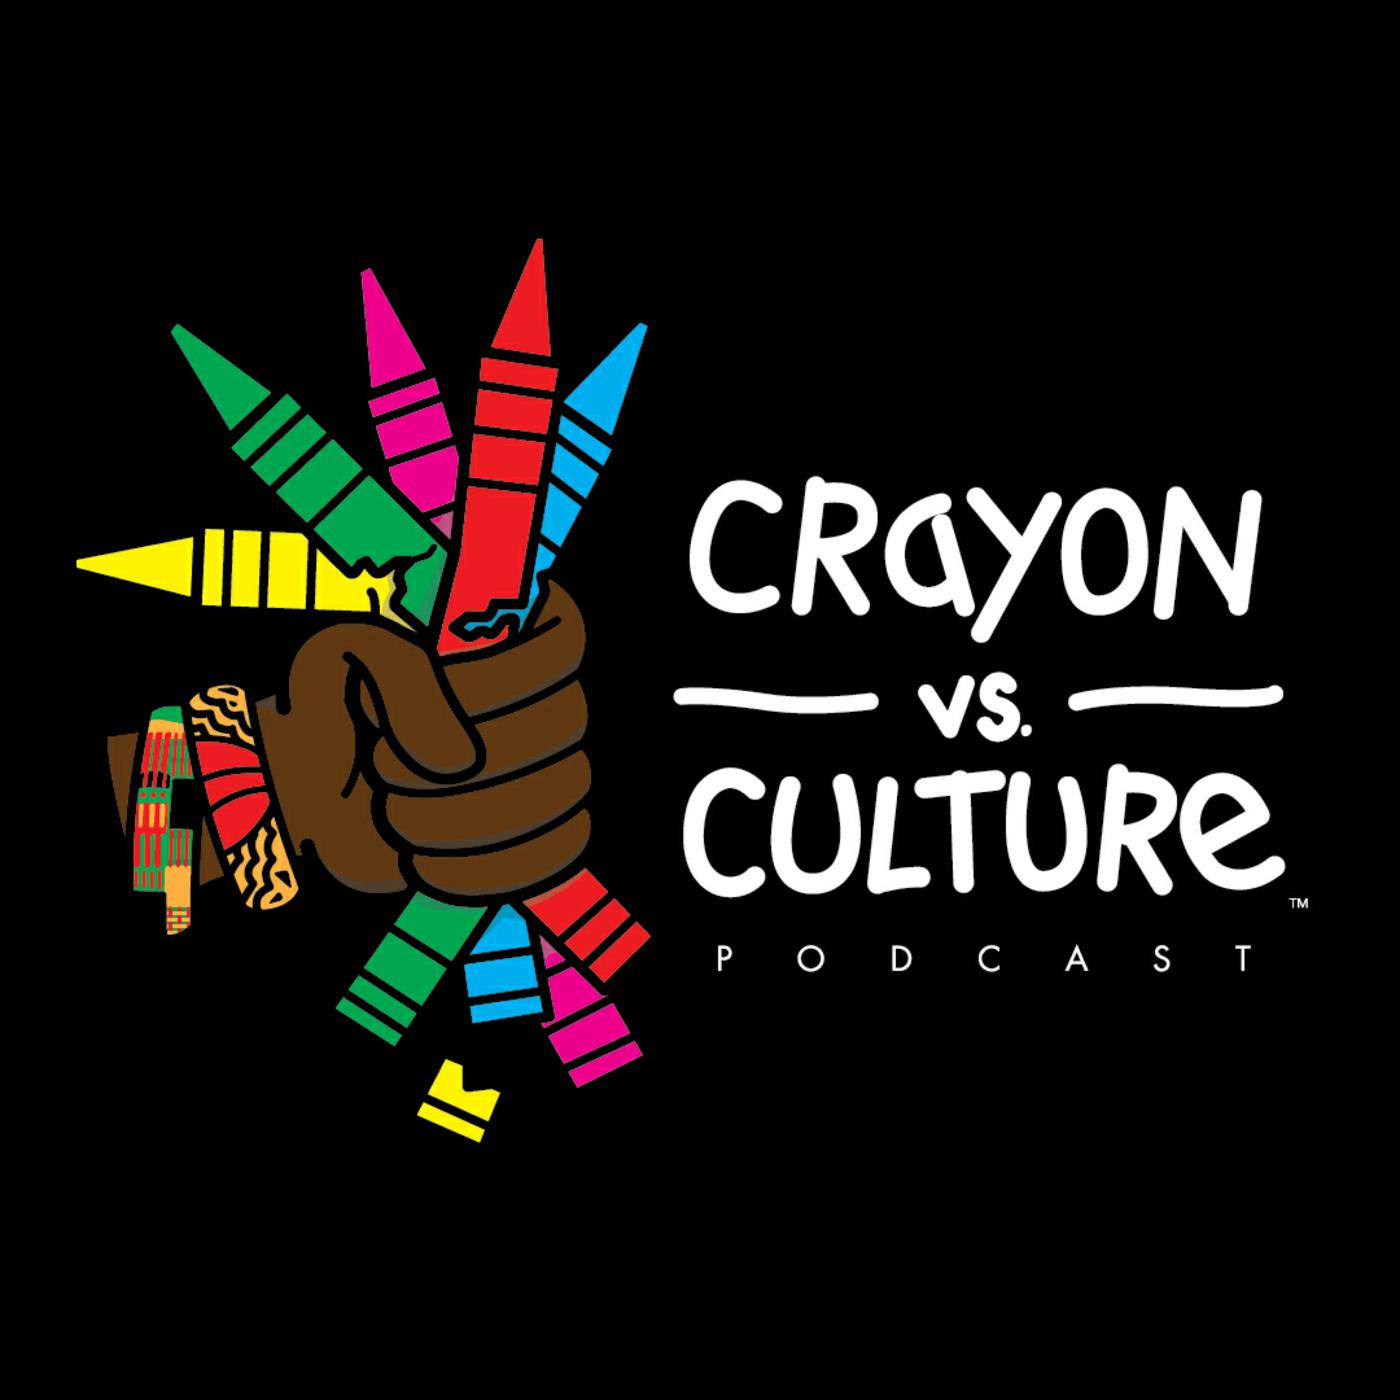 Crayon.vs.Culture